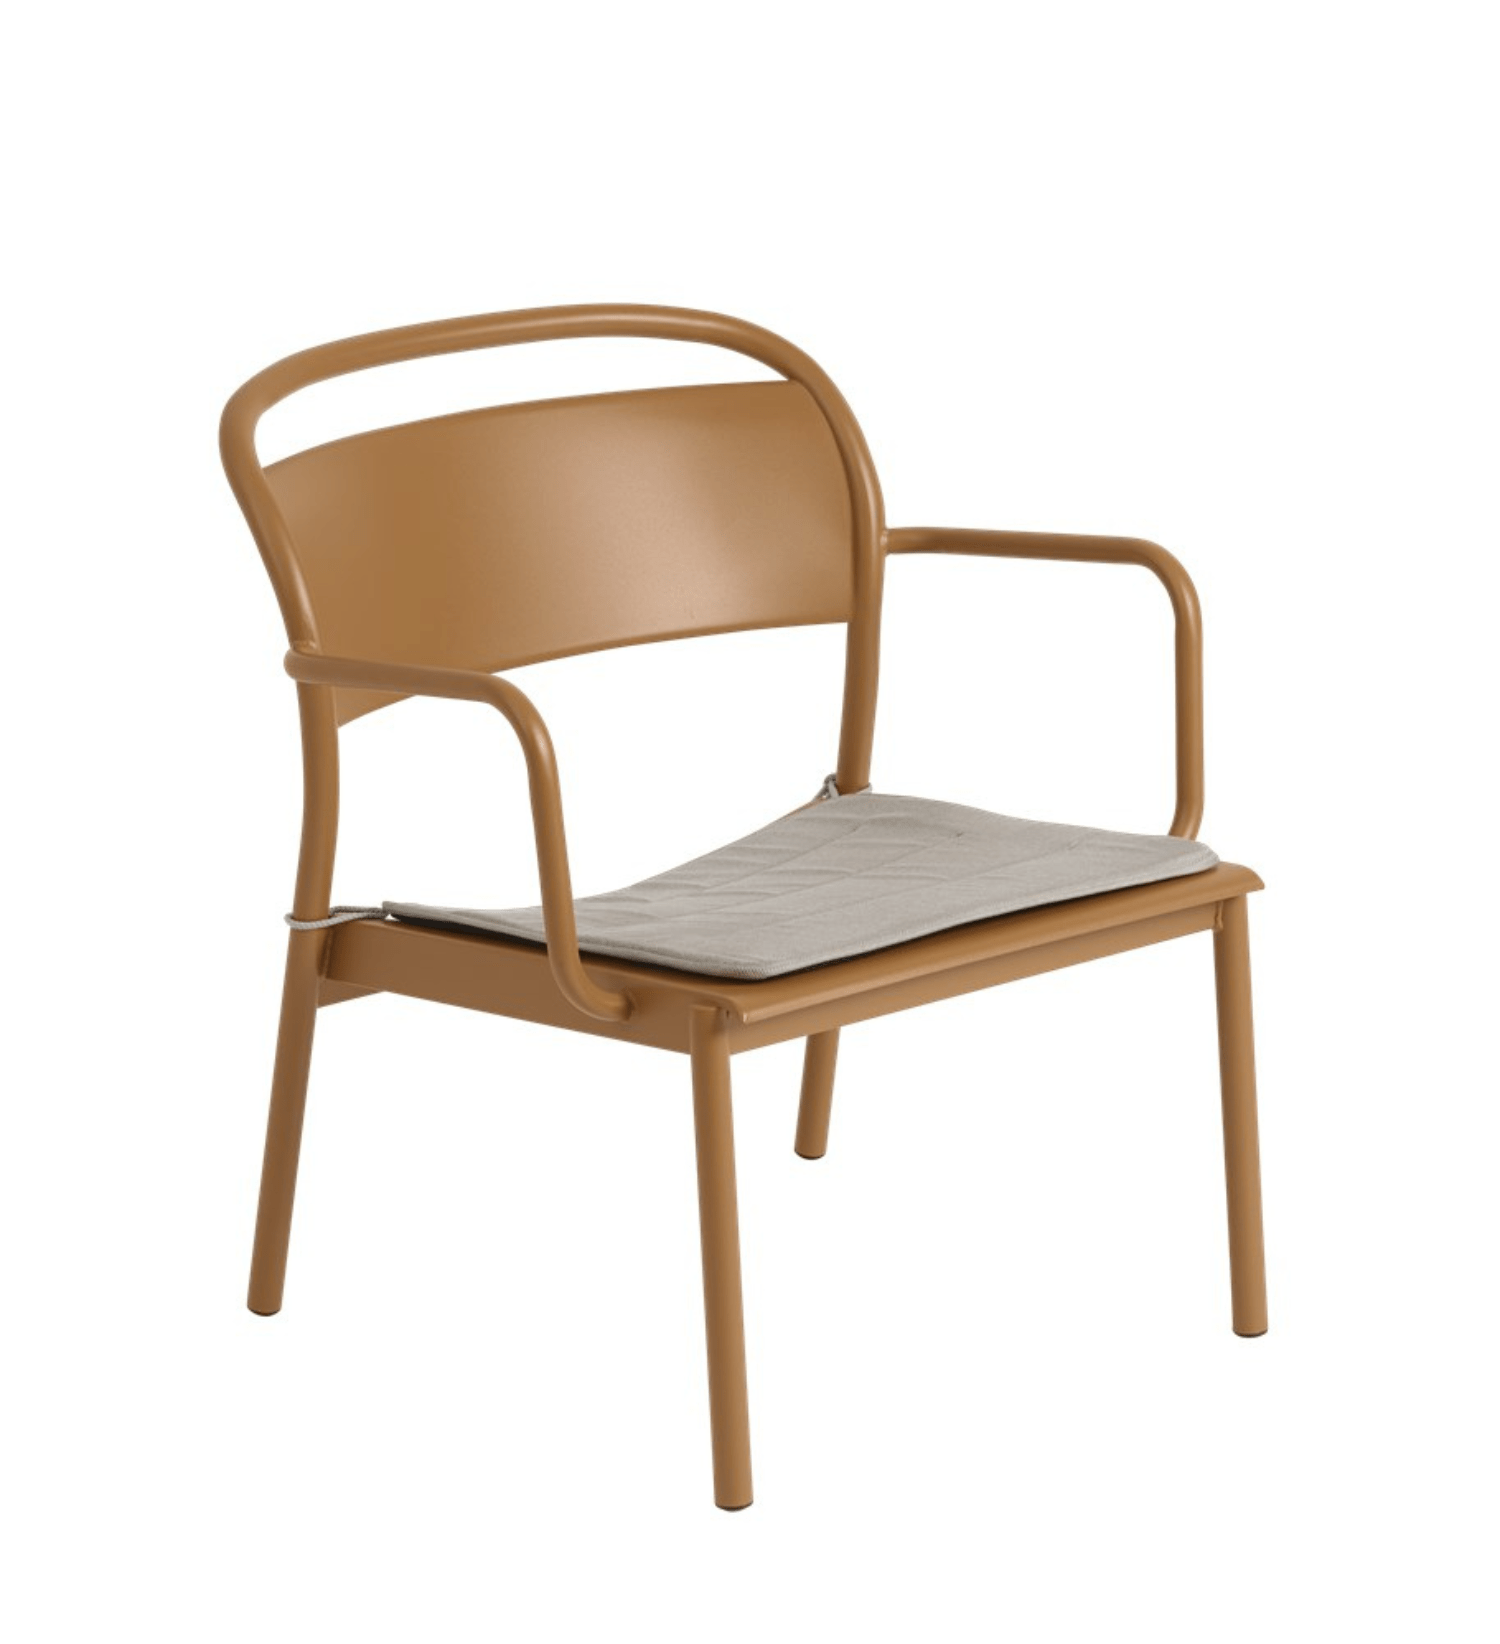 Fotel ogrodowy Linear Steel Lounge Arcmchair marki Muuto - kolekcja outdoorowa Linear